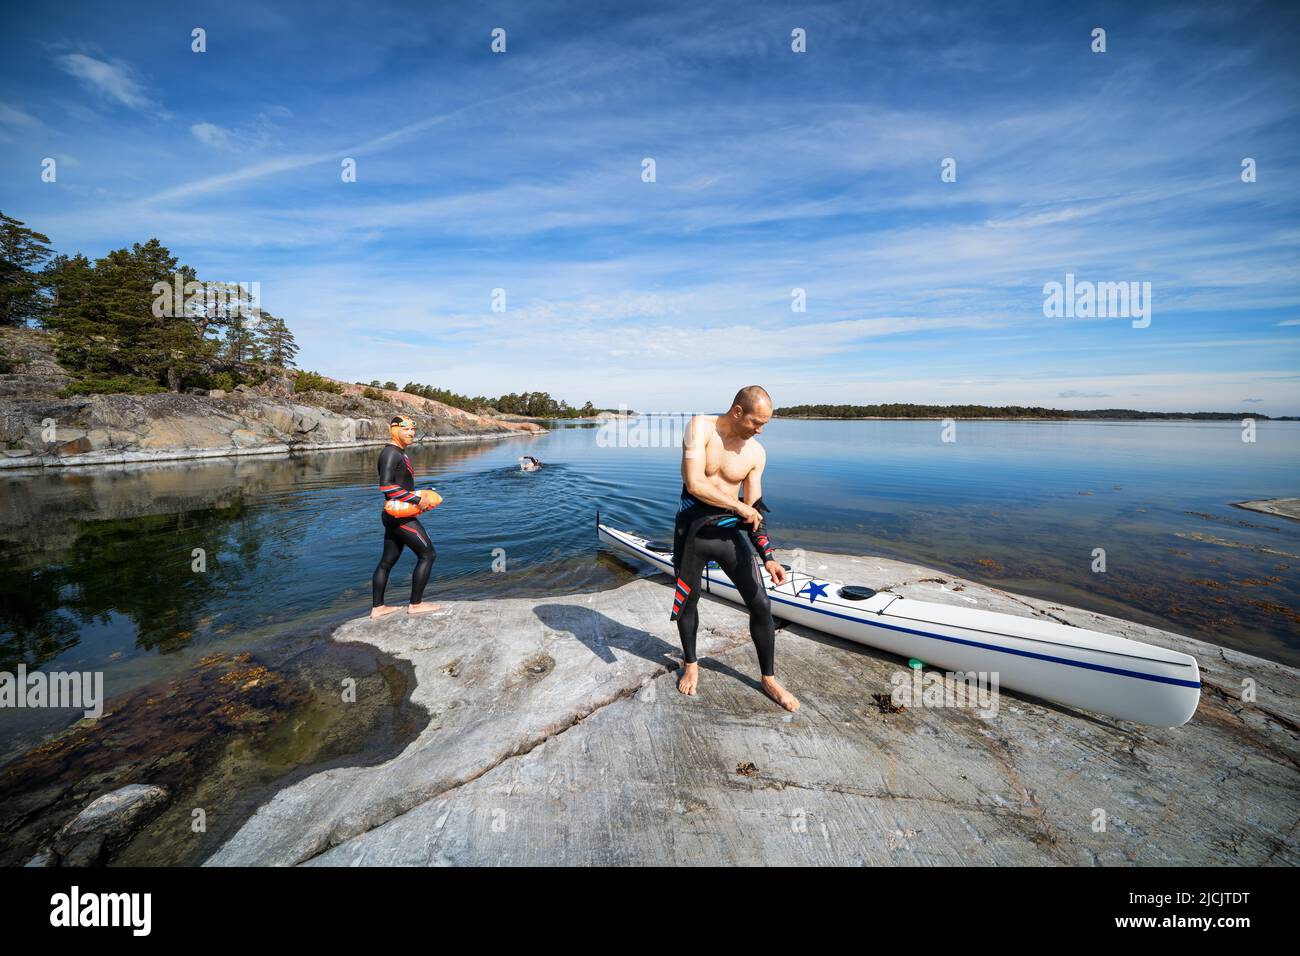 Preparatevi per il nuoto in acqua aperta sull'isola di Dalskär, Parainen, Finlandia Foto Stock